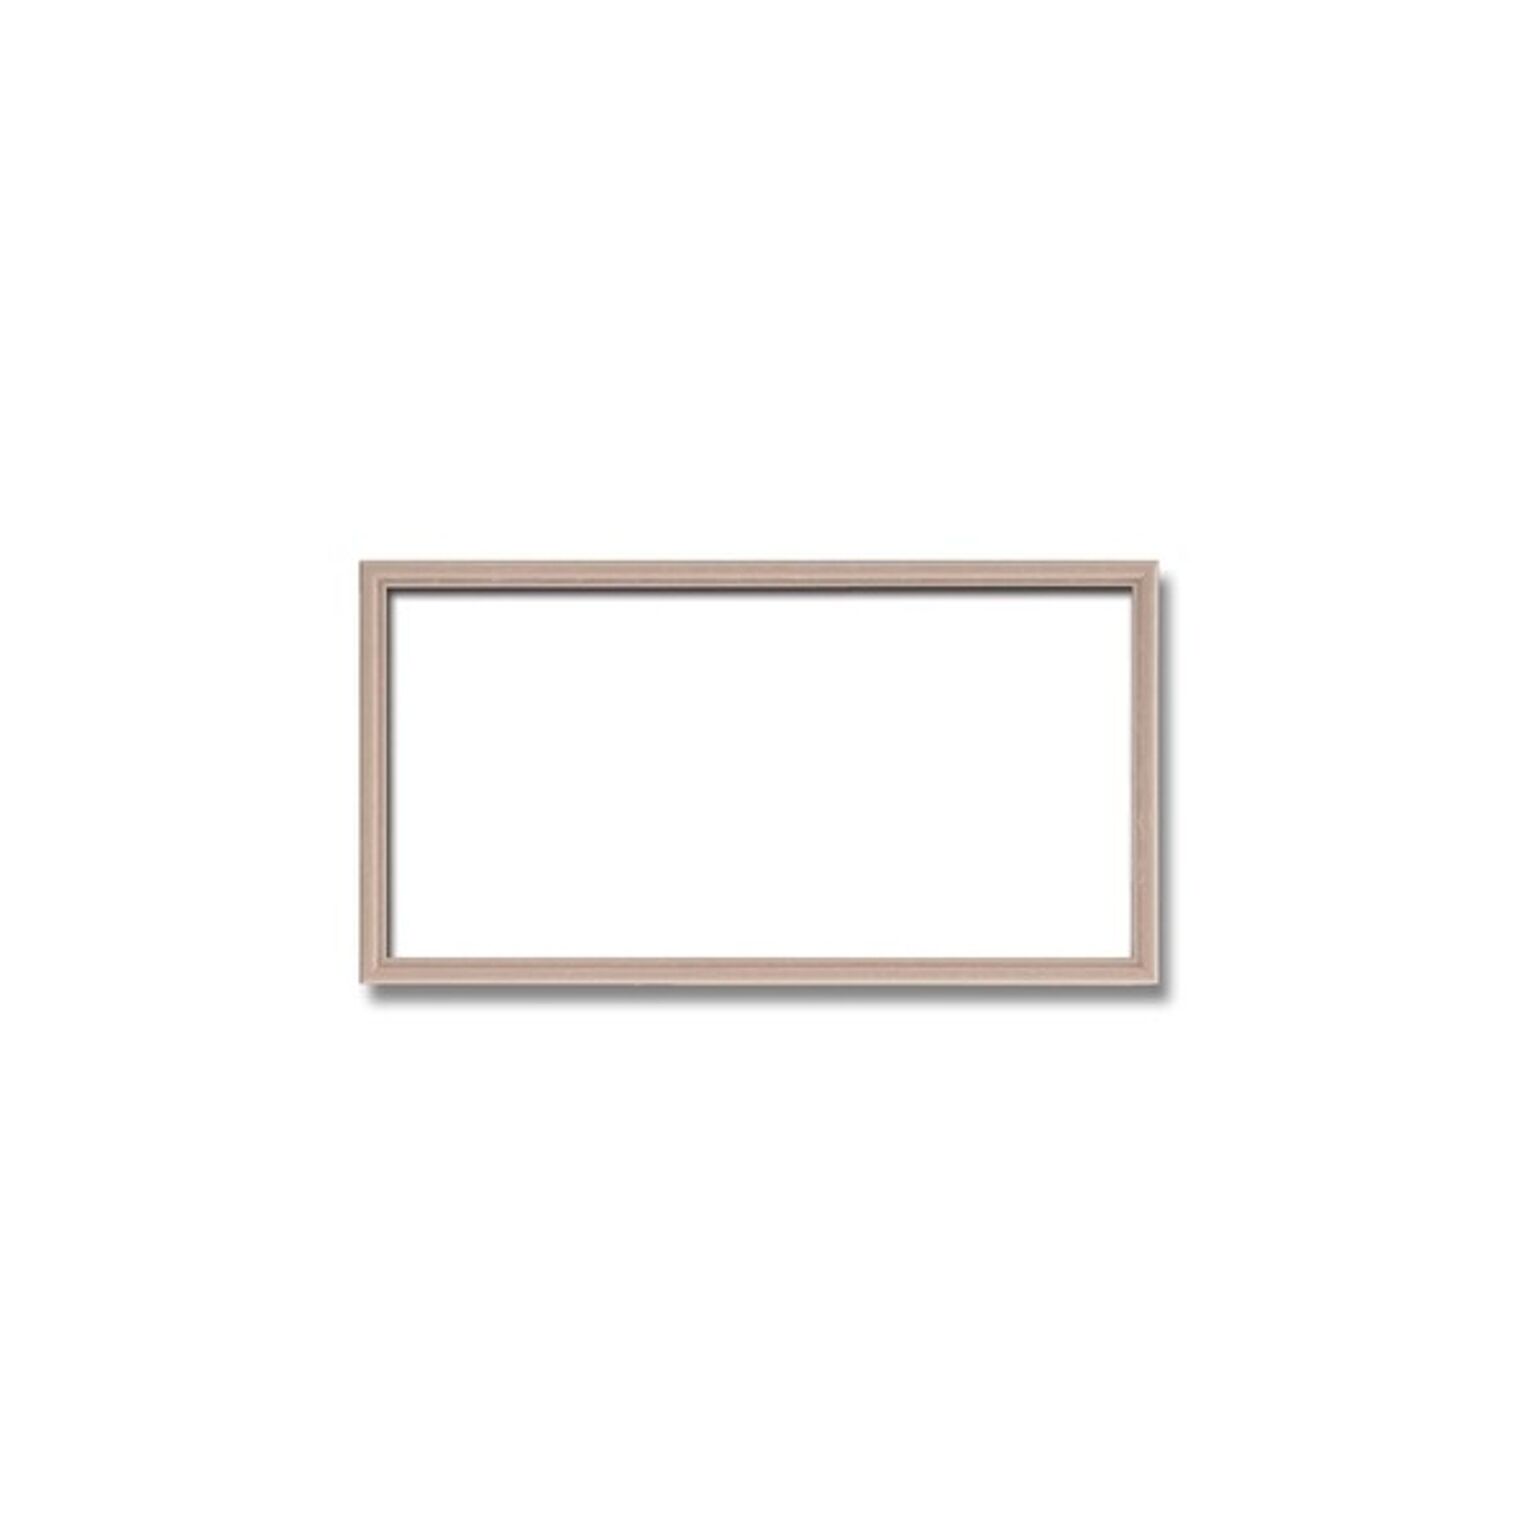 【長方形額】木製額 縦横兼用額 カラー4色展開 ■カラー長方形額（350×200mm） ピンクベージュ